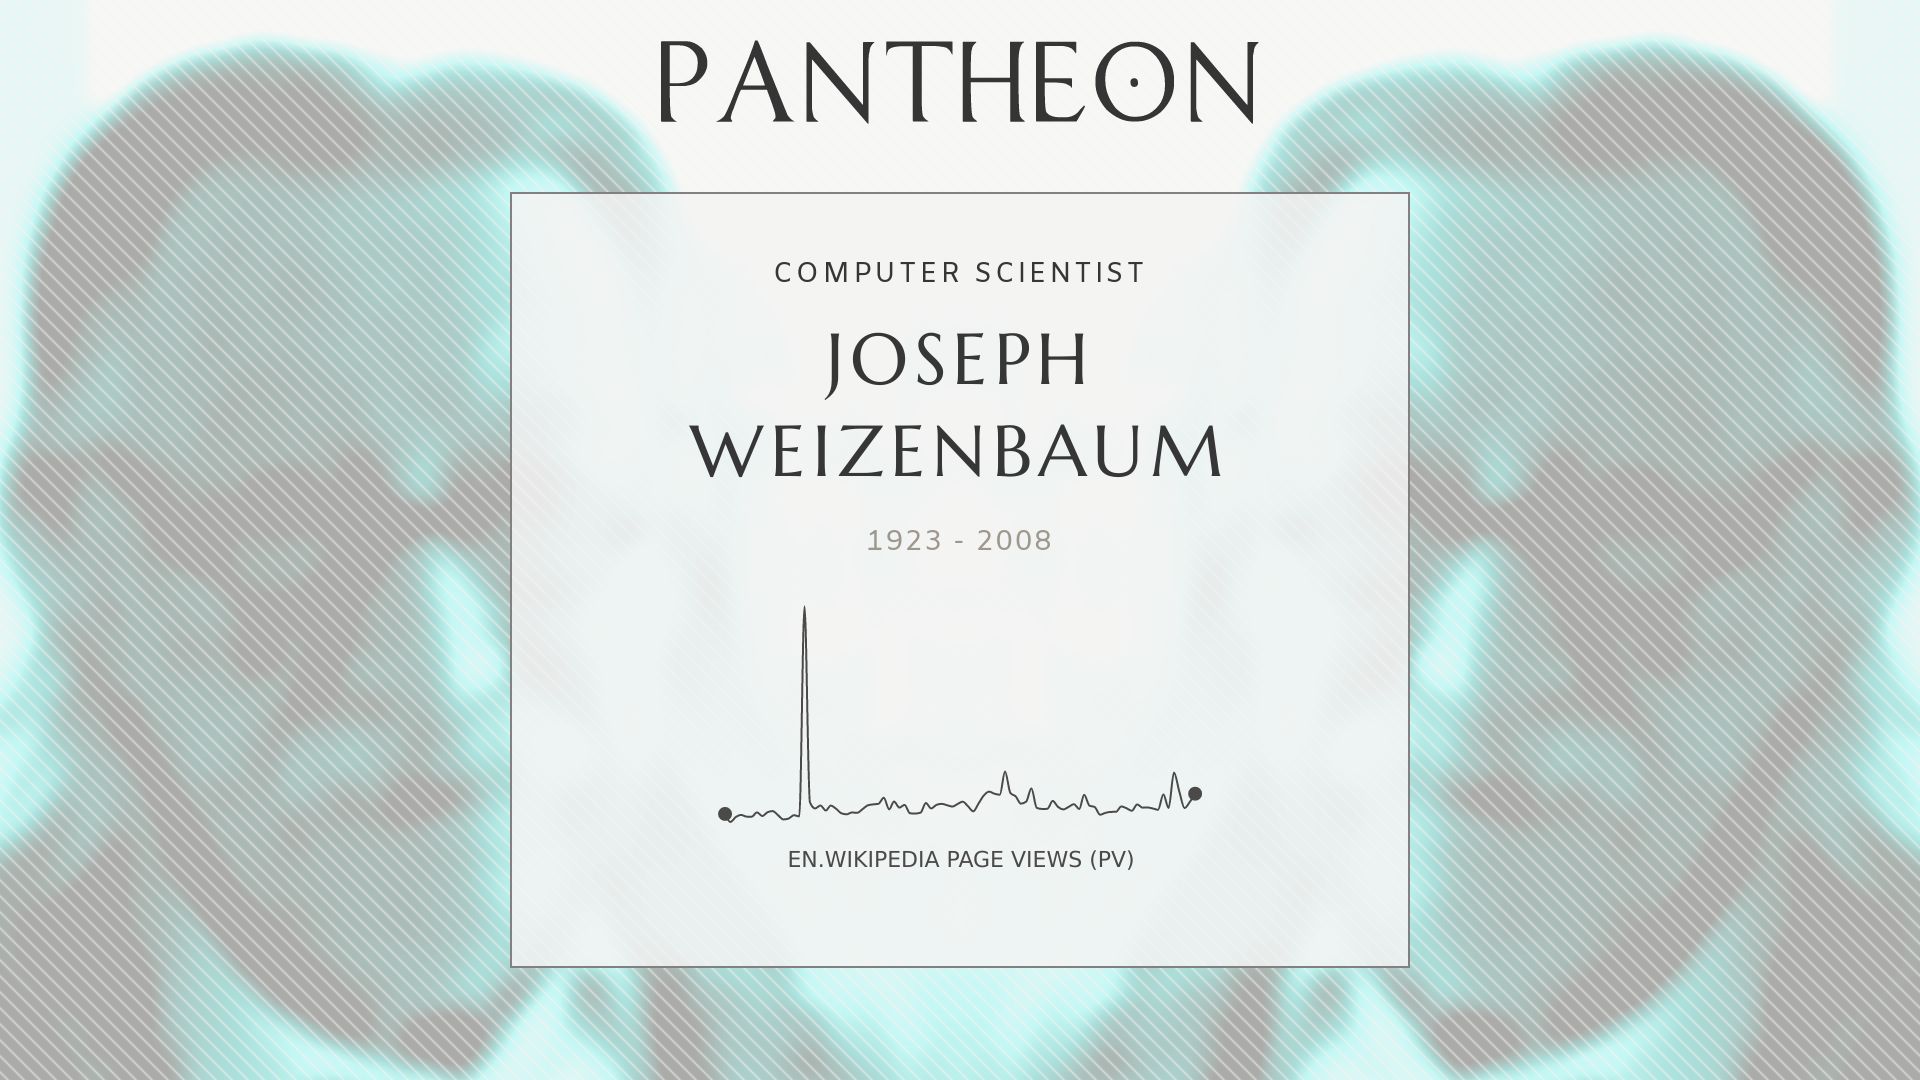 Joseph weizenbaum biography